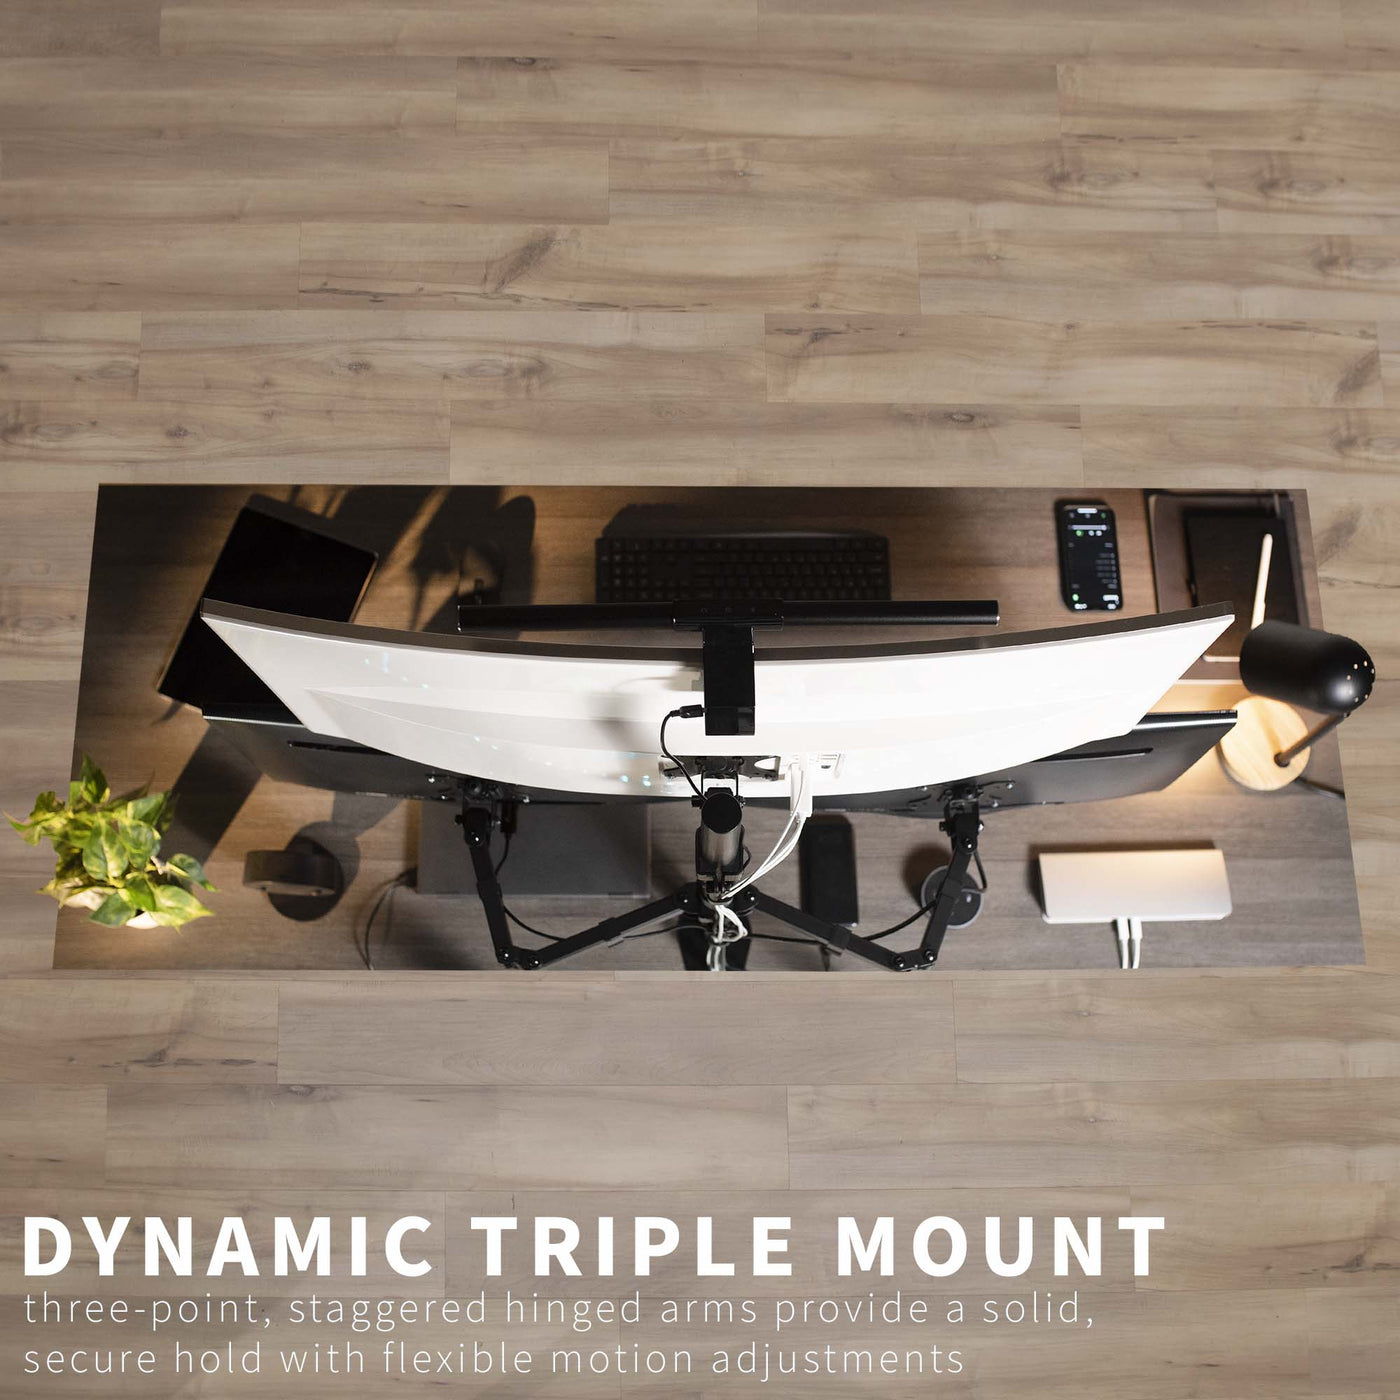 Triple Monitor Desk Mount